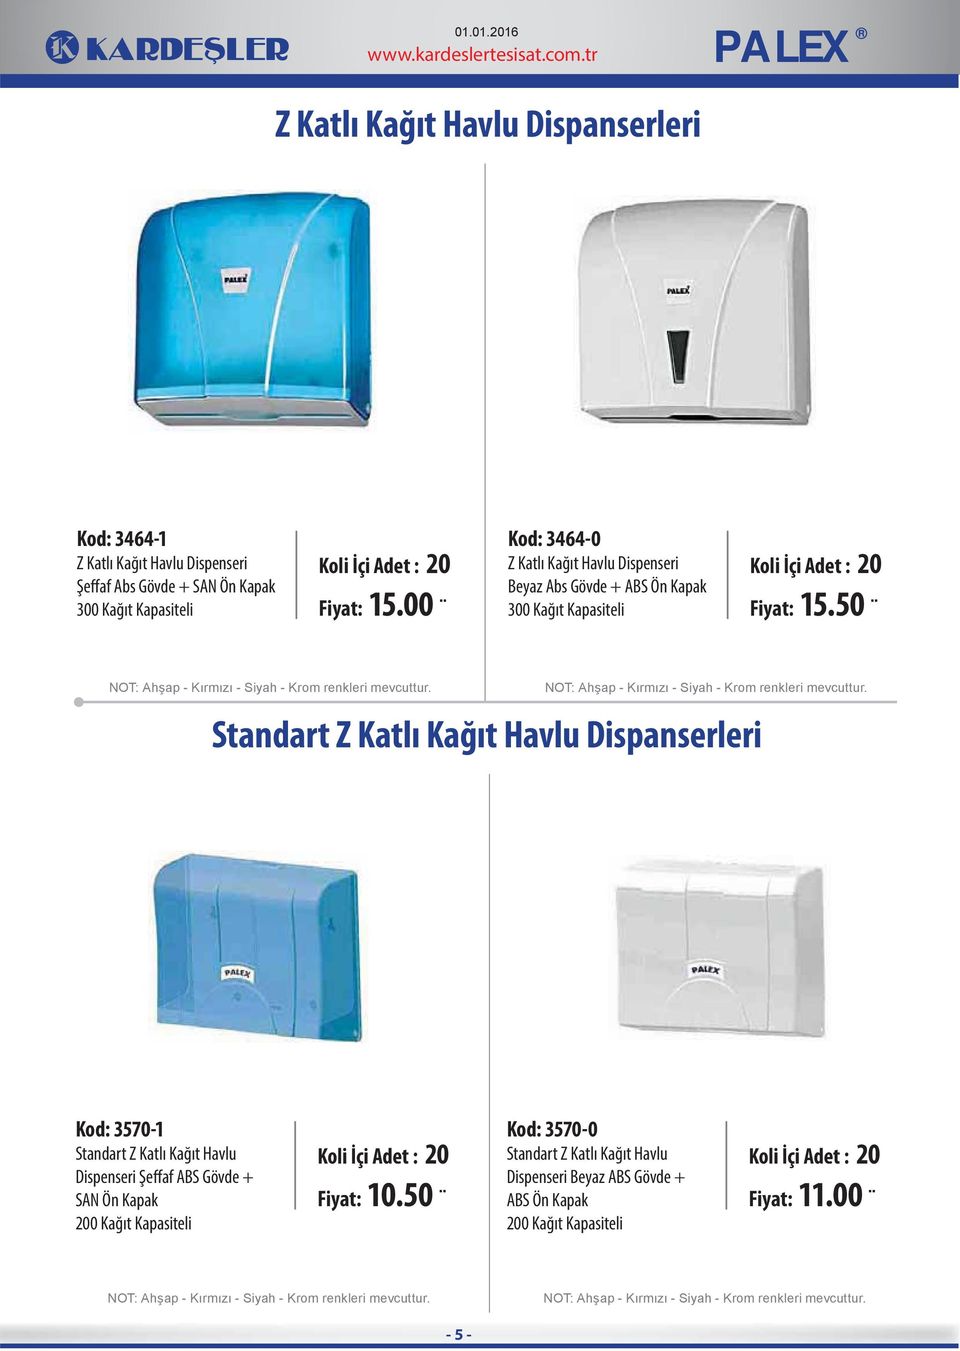 50 Standart Z Katlı Kağıt Havlu Dispanserleri Kod: 3570-1 Standart Z Katlı Kağıt Havlu Dispenseri Şeffaf ABS Gövde + SAN Ön Kapak